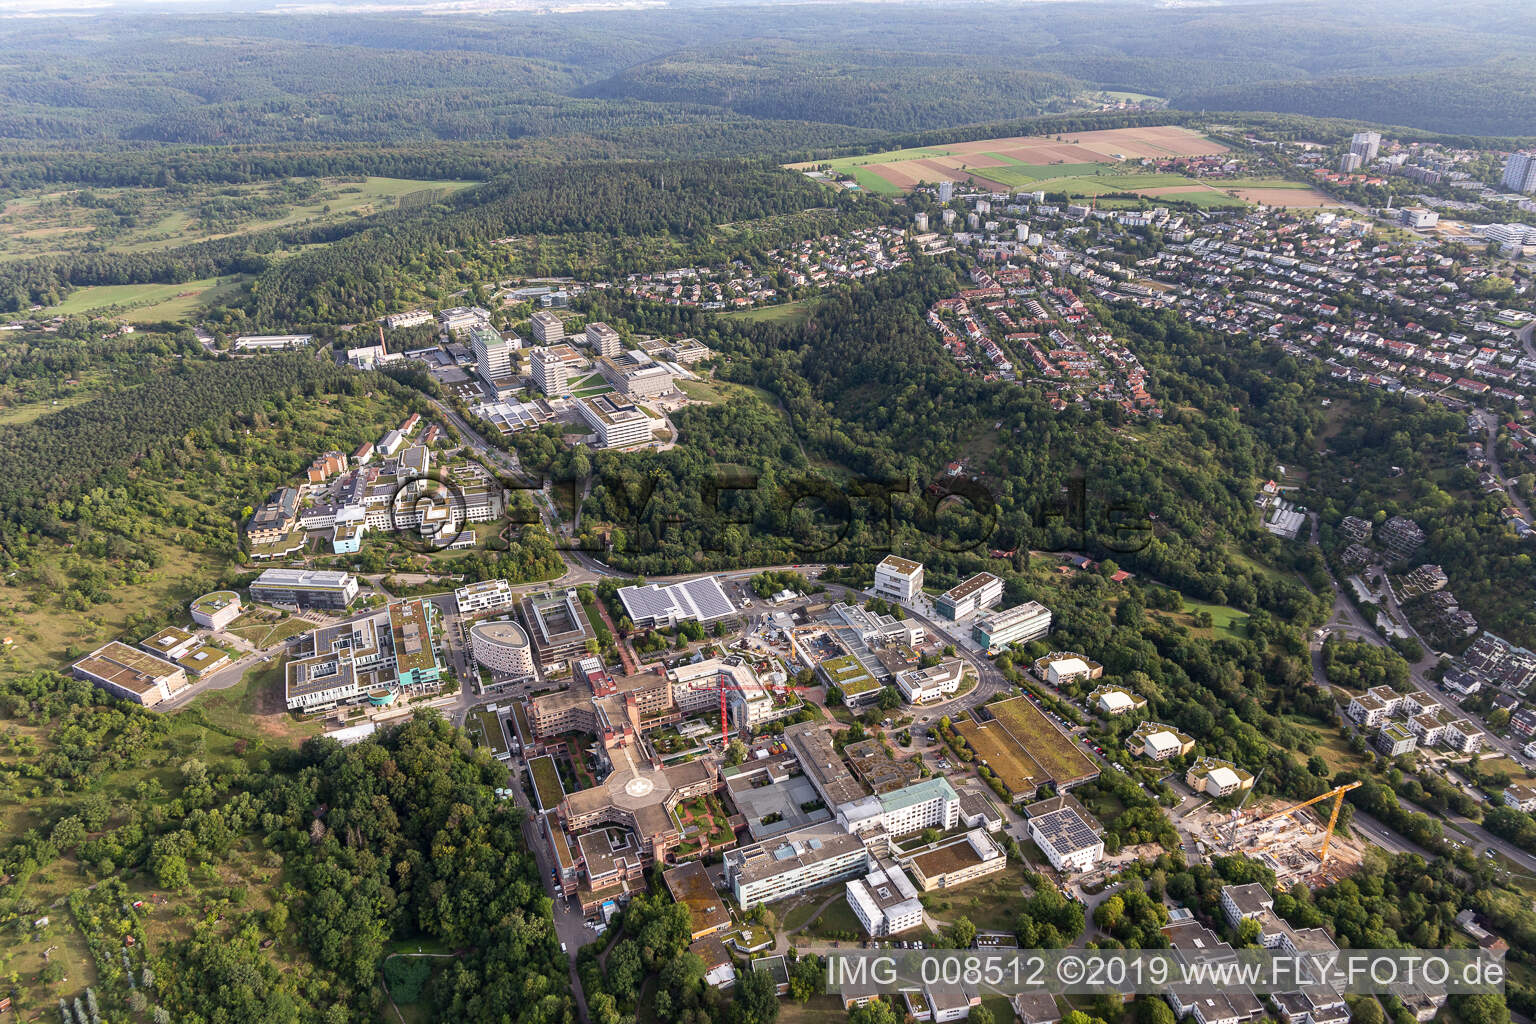 BG Clinic, University and University Hospital Tübingen in Tübingen in the state Baden-Wuerttemberg, Germany from above